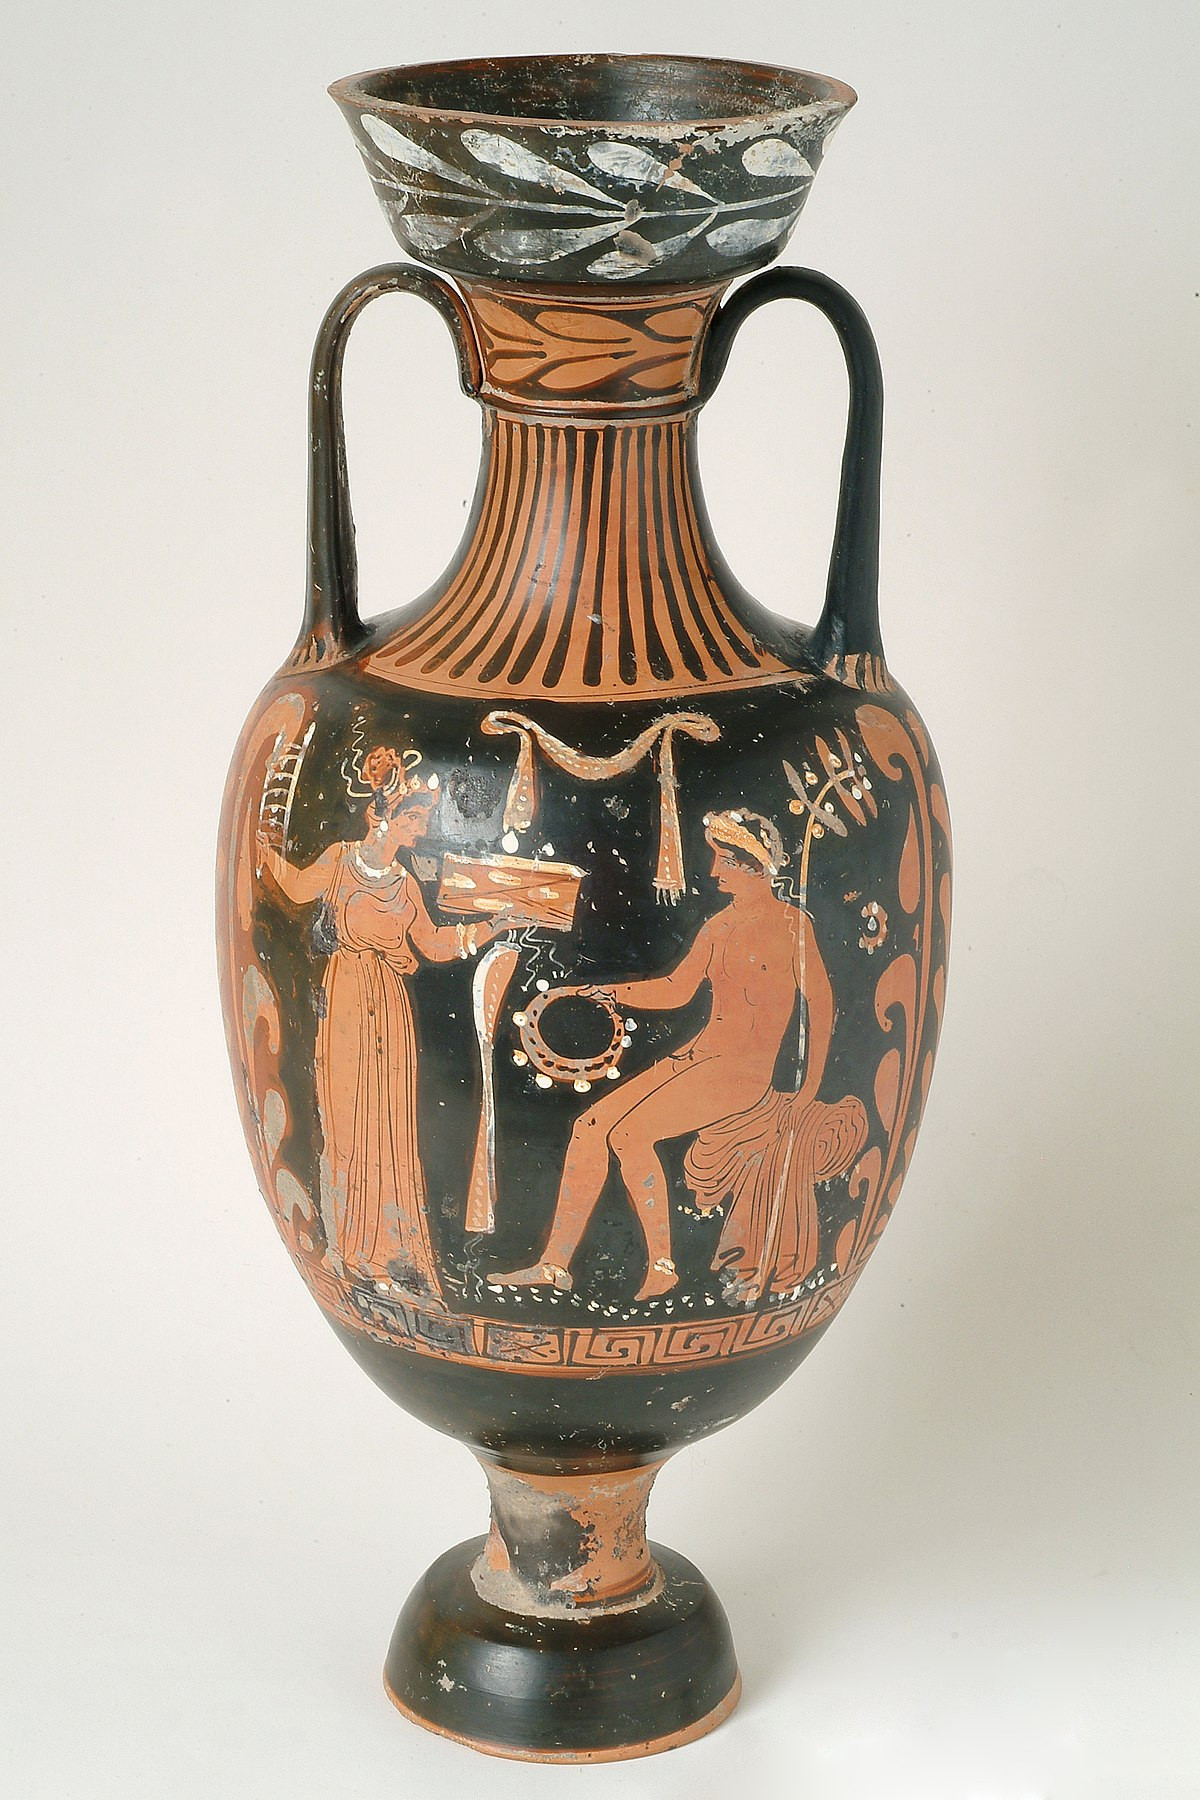 14 Popular Antique Porcelain Vases 2023 free download antique porcelain vases of q29966310 wikidata in 1200px msr 93 1 2 mv a